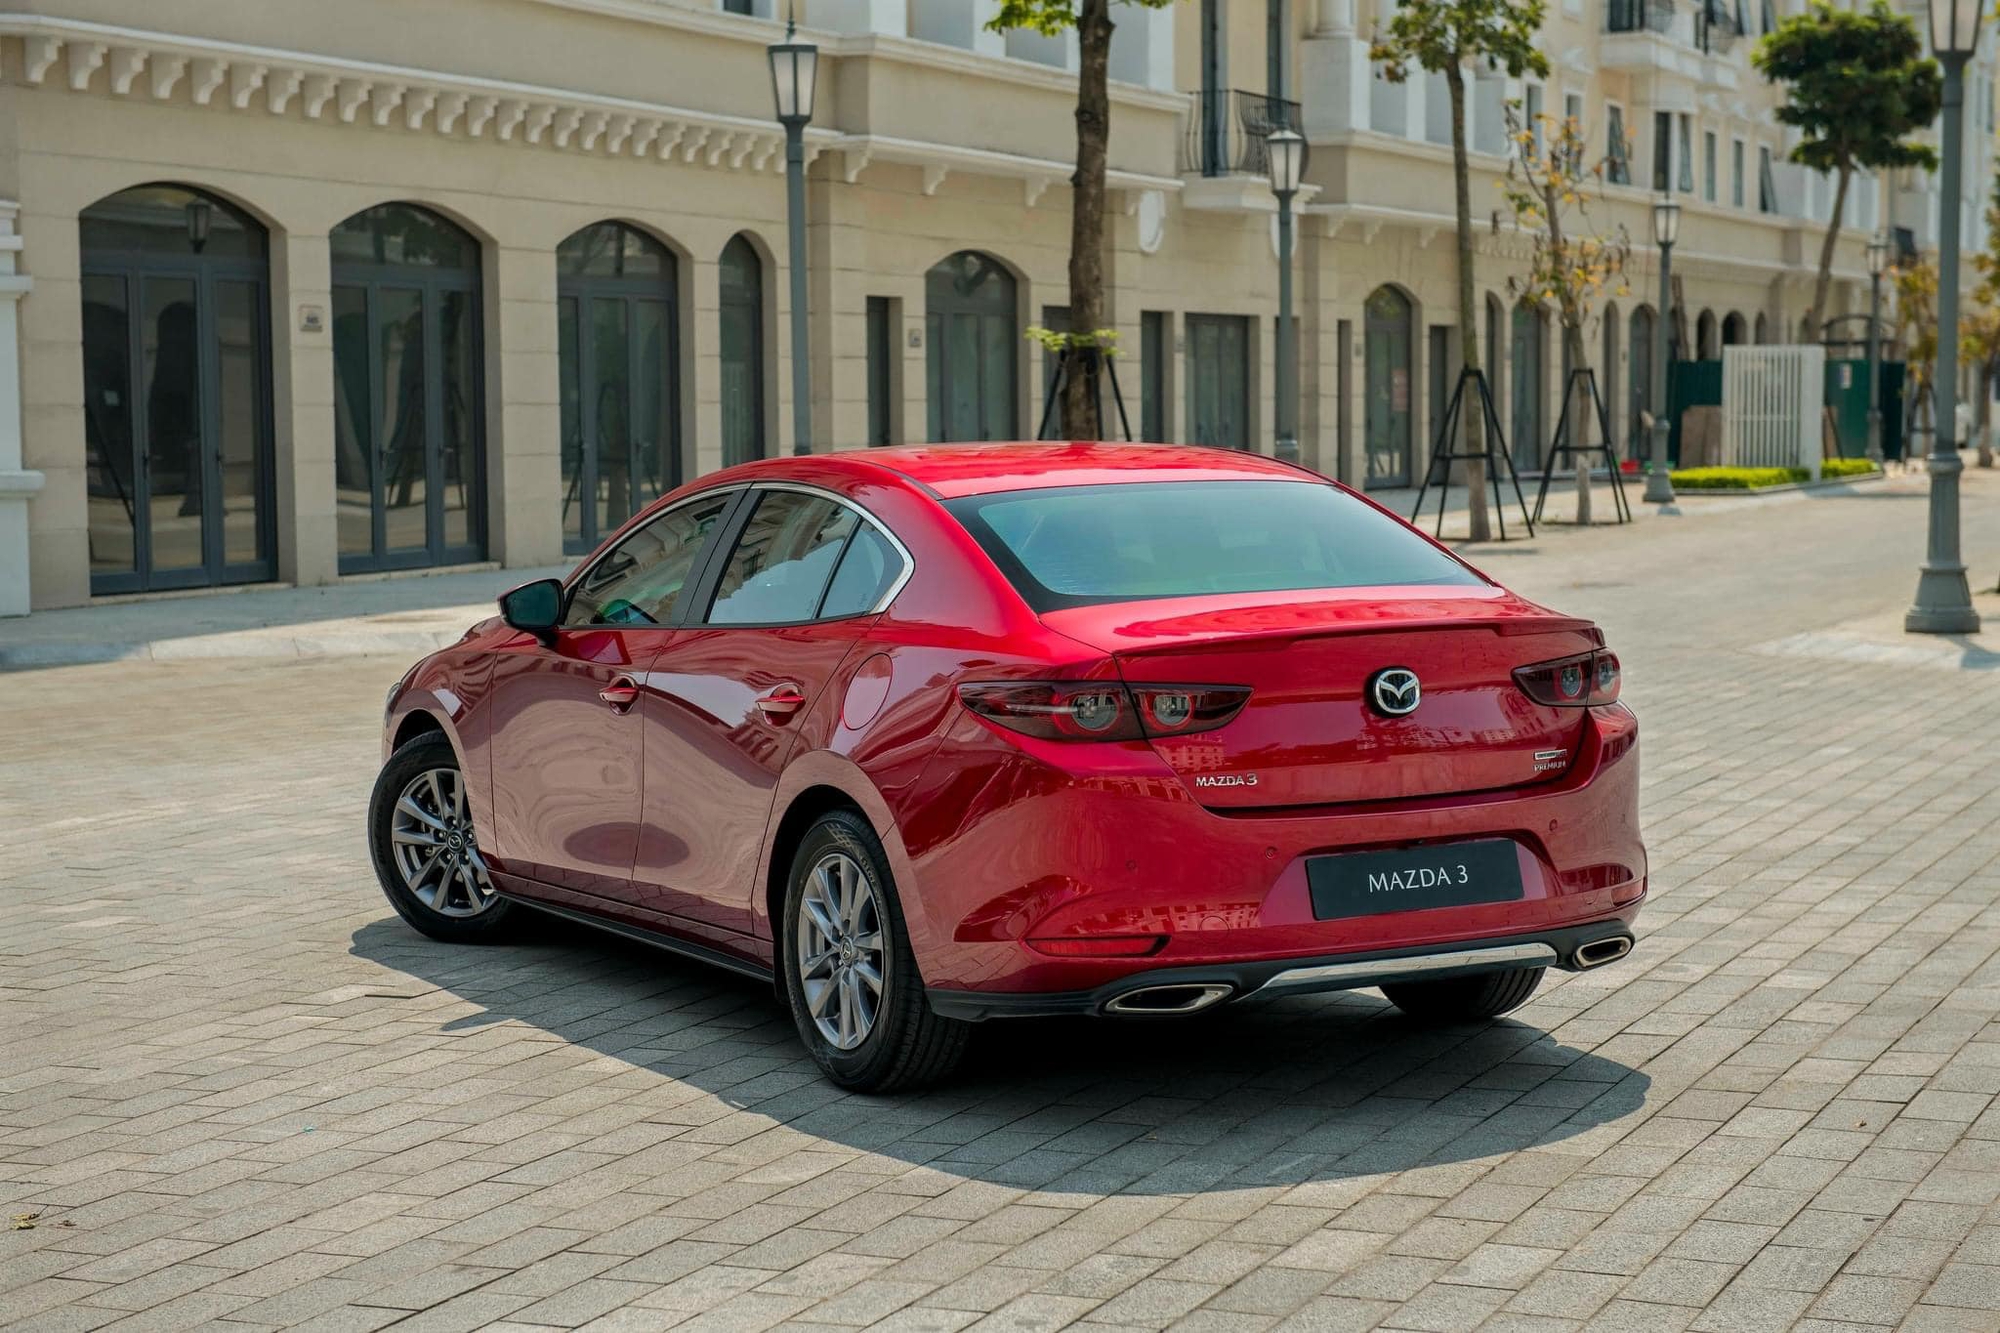 Mazda3 thêm bản mới tại Việt Nam: Giá 739 triệu, bổ sung 4 trang bị nhưng vẫn dùng máy 1.5L - Ảnh 7.